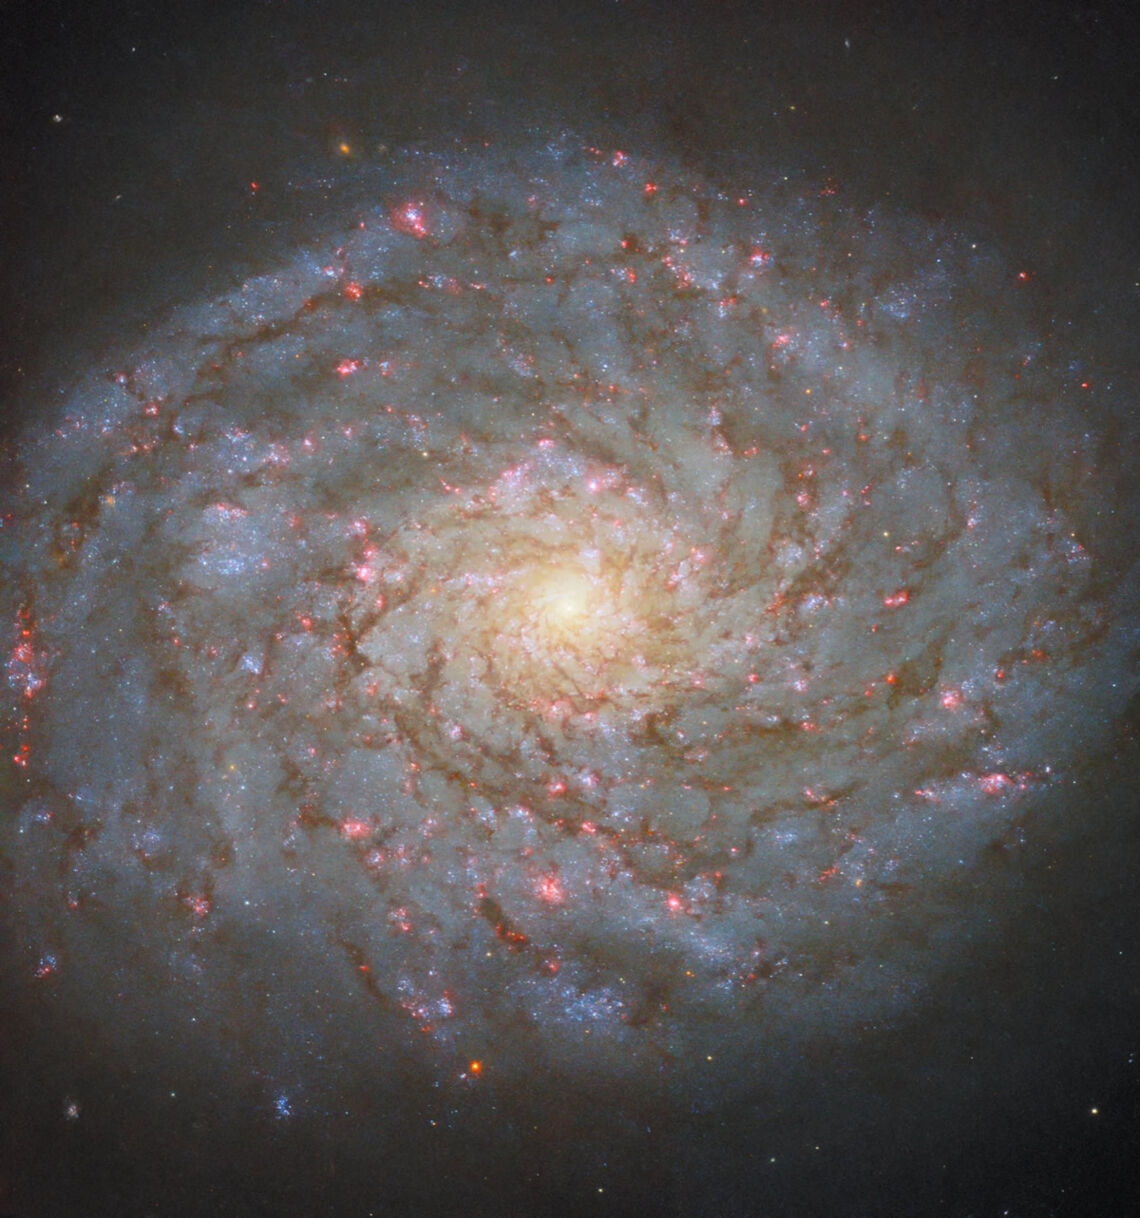 Imagen capturada por el Hubble. Créditos: NASA